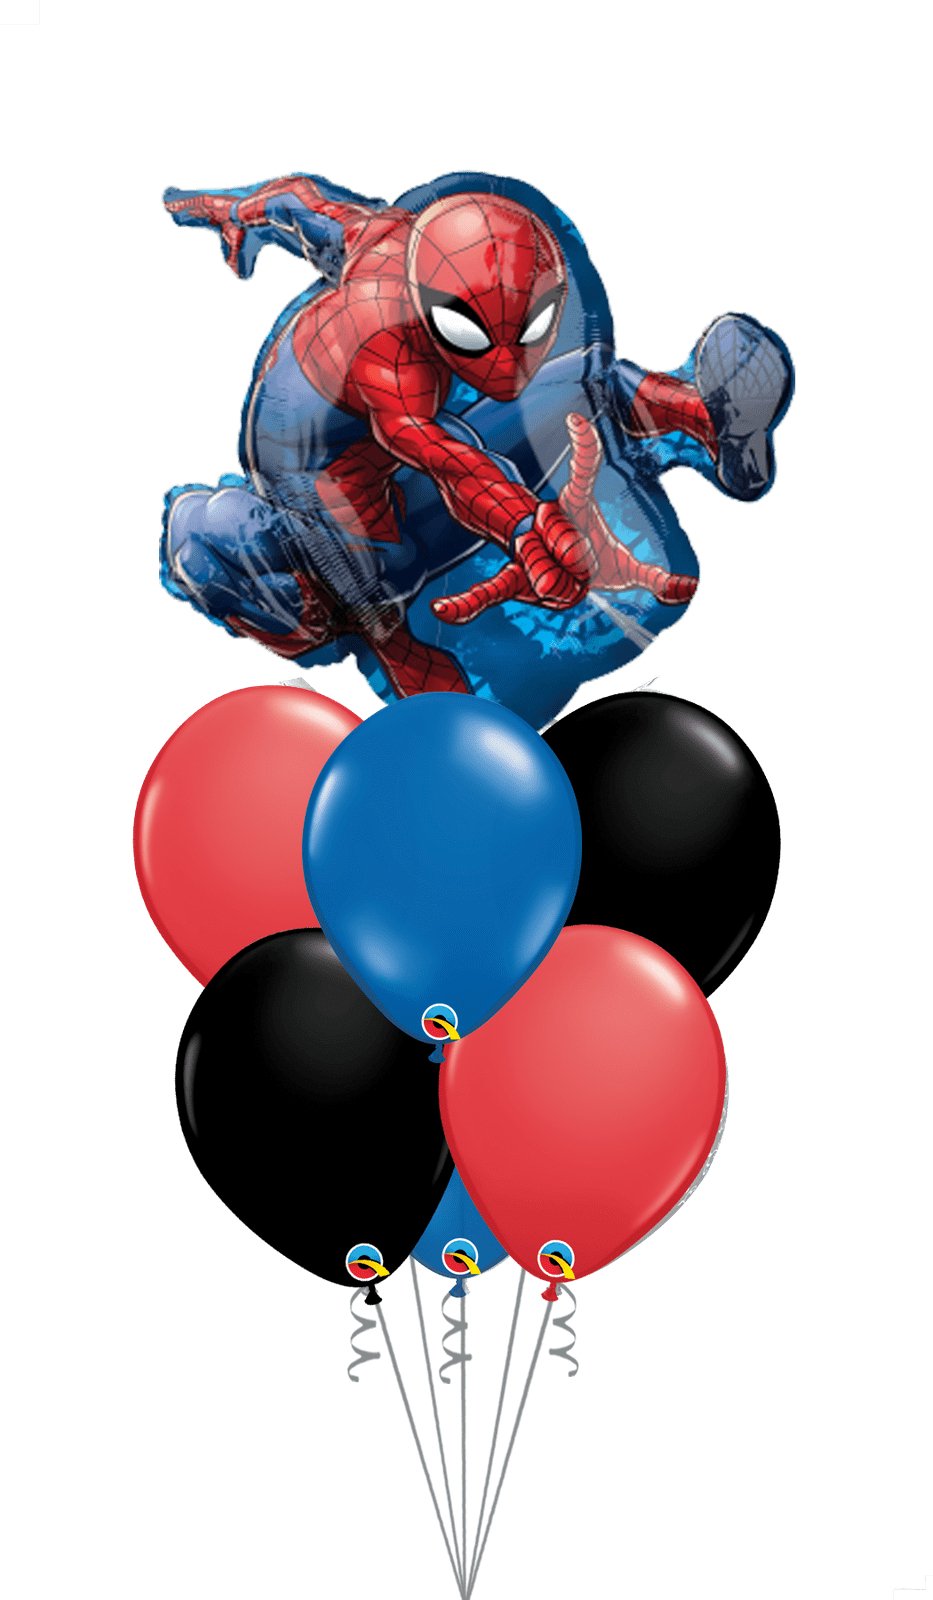 Globos Spiderman con Helio para Cumpleaños